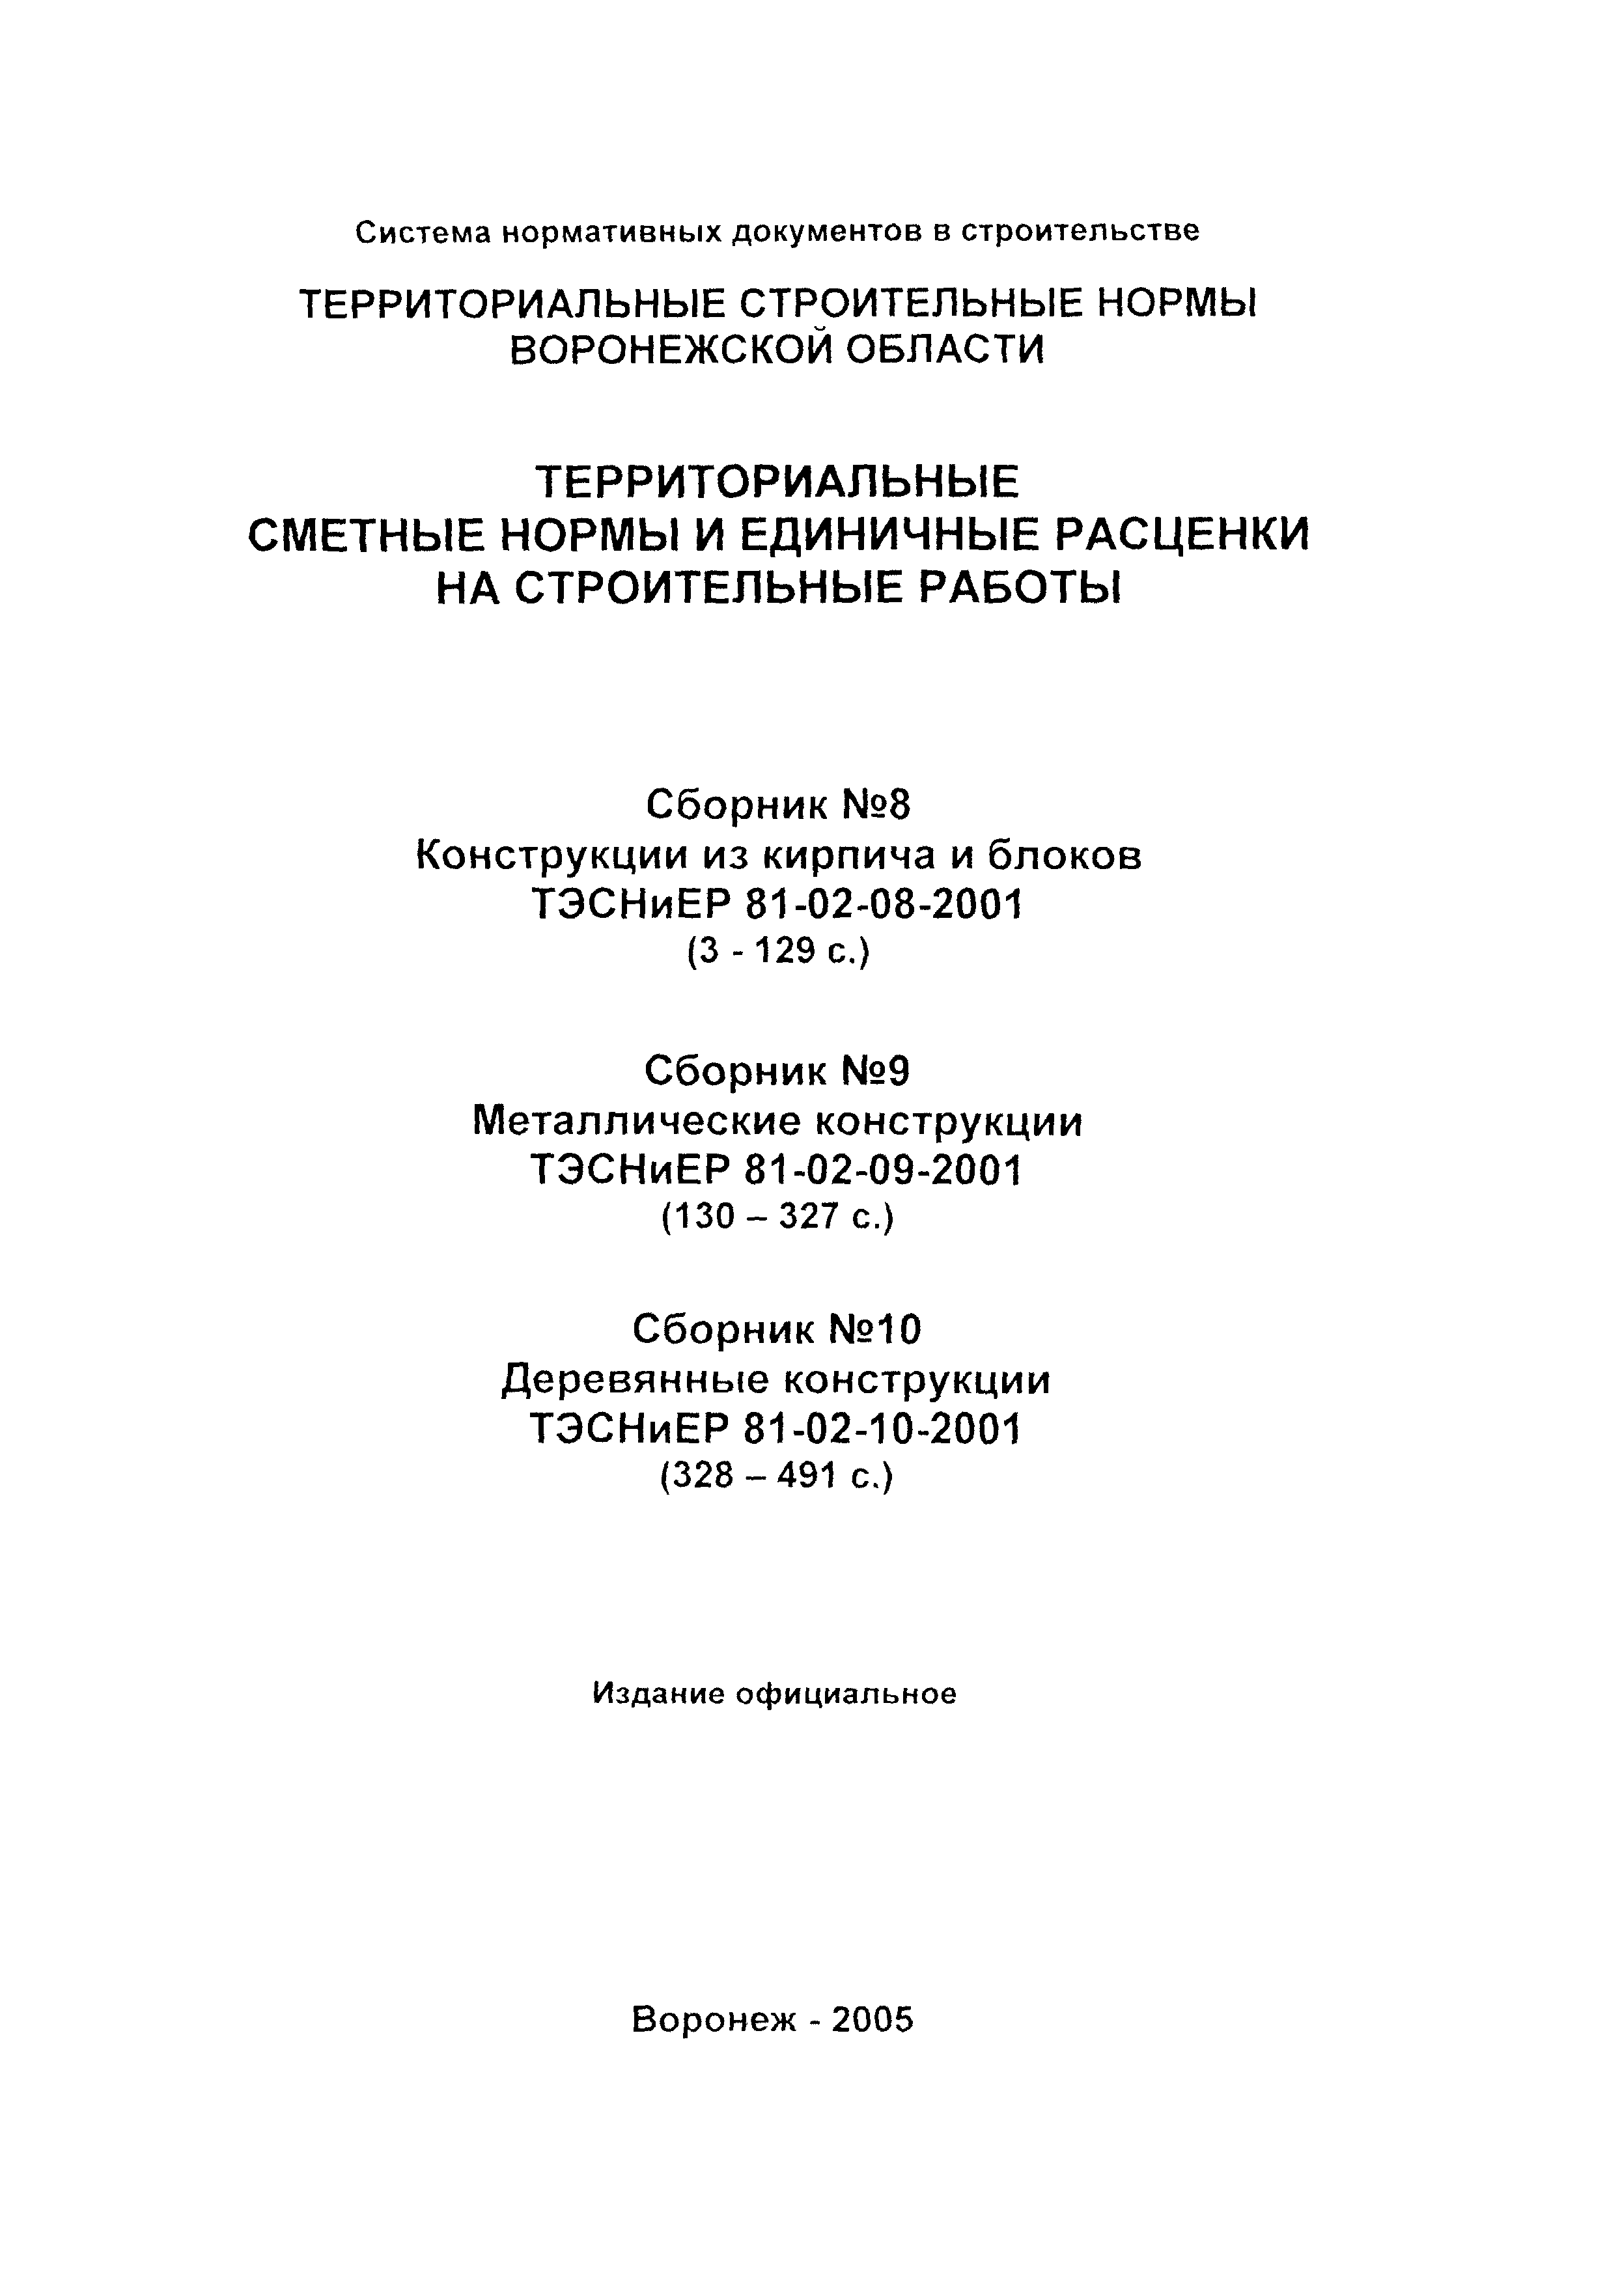 ТЭСНиЕР Воронежской области 81-02-10-2001